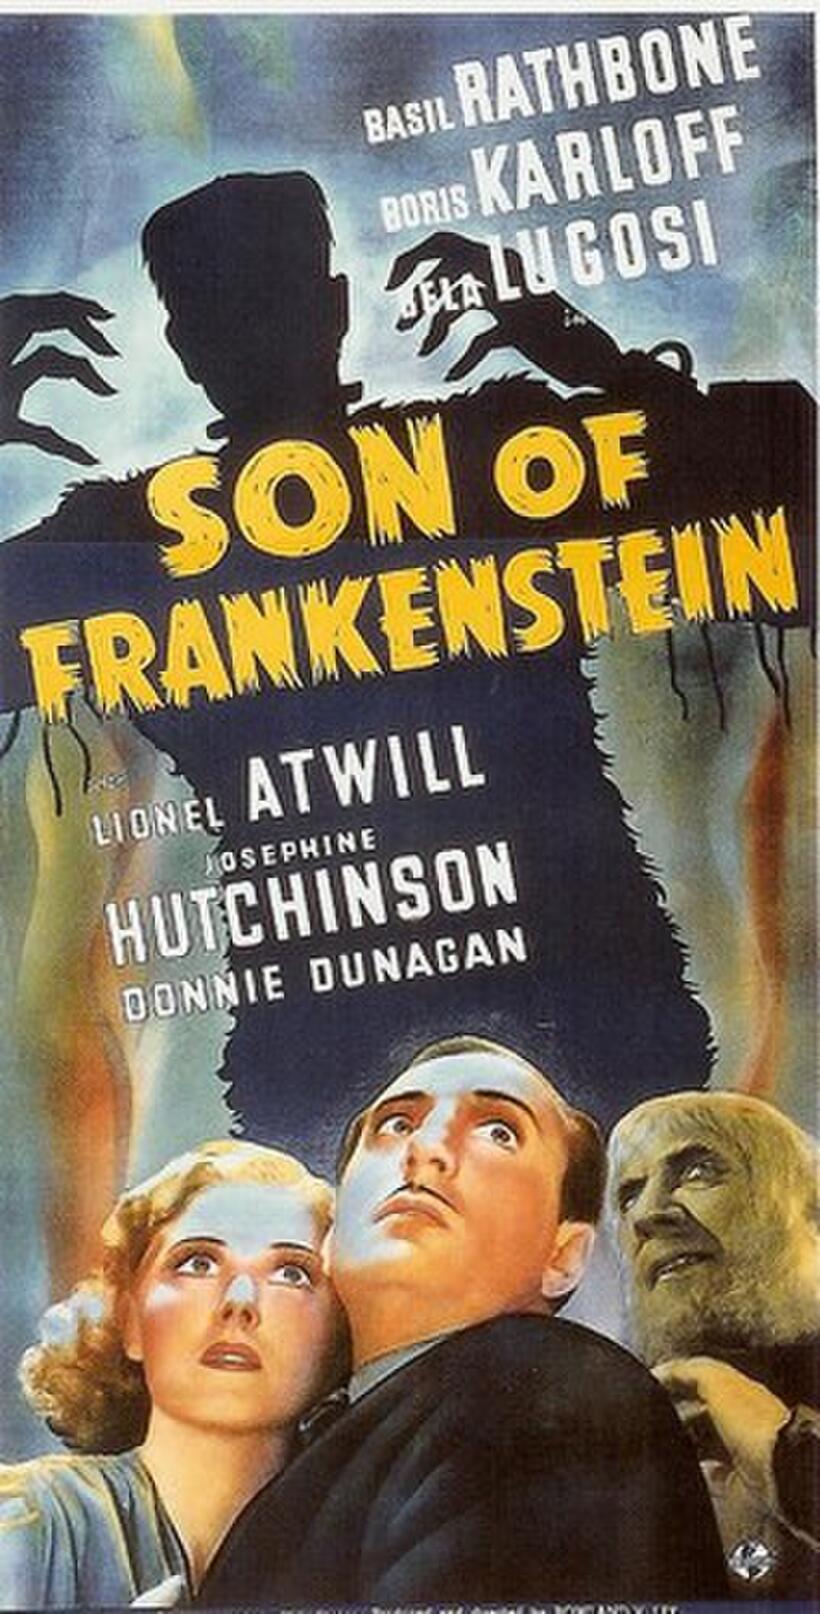 Poster art for "Son of Frankenstein."